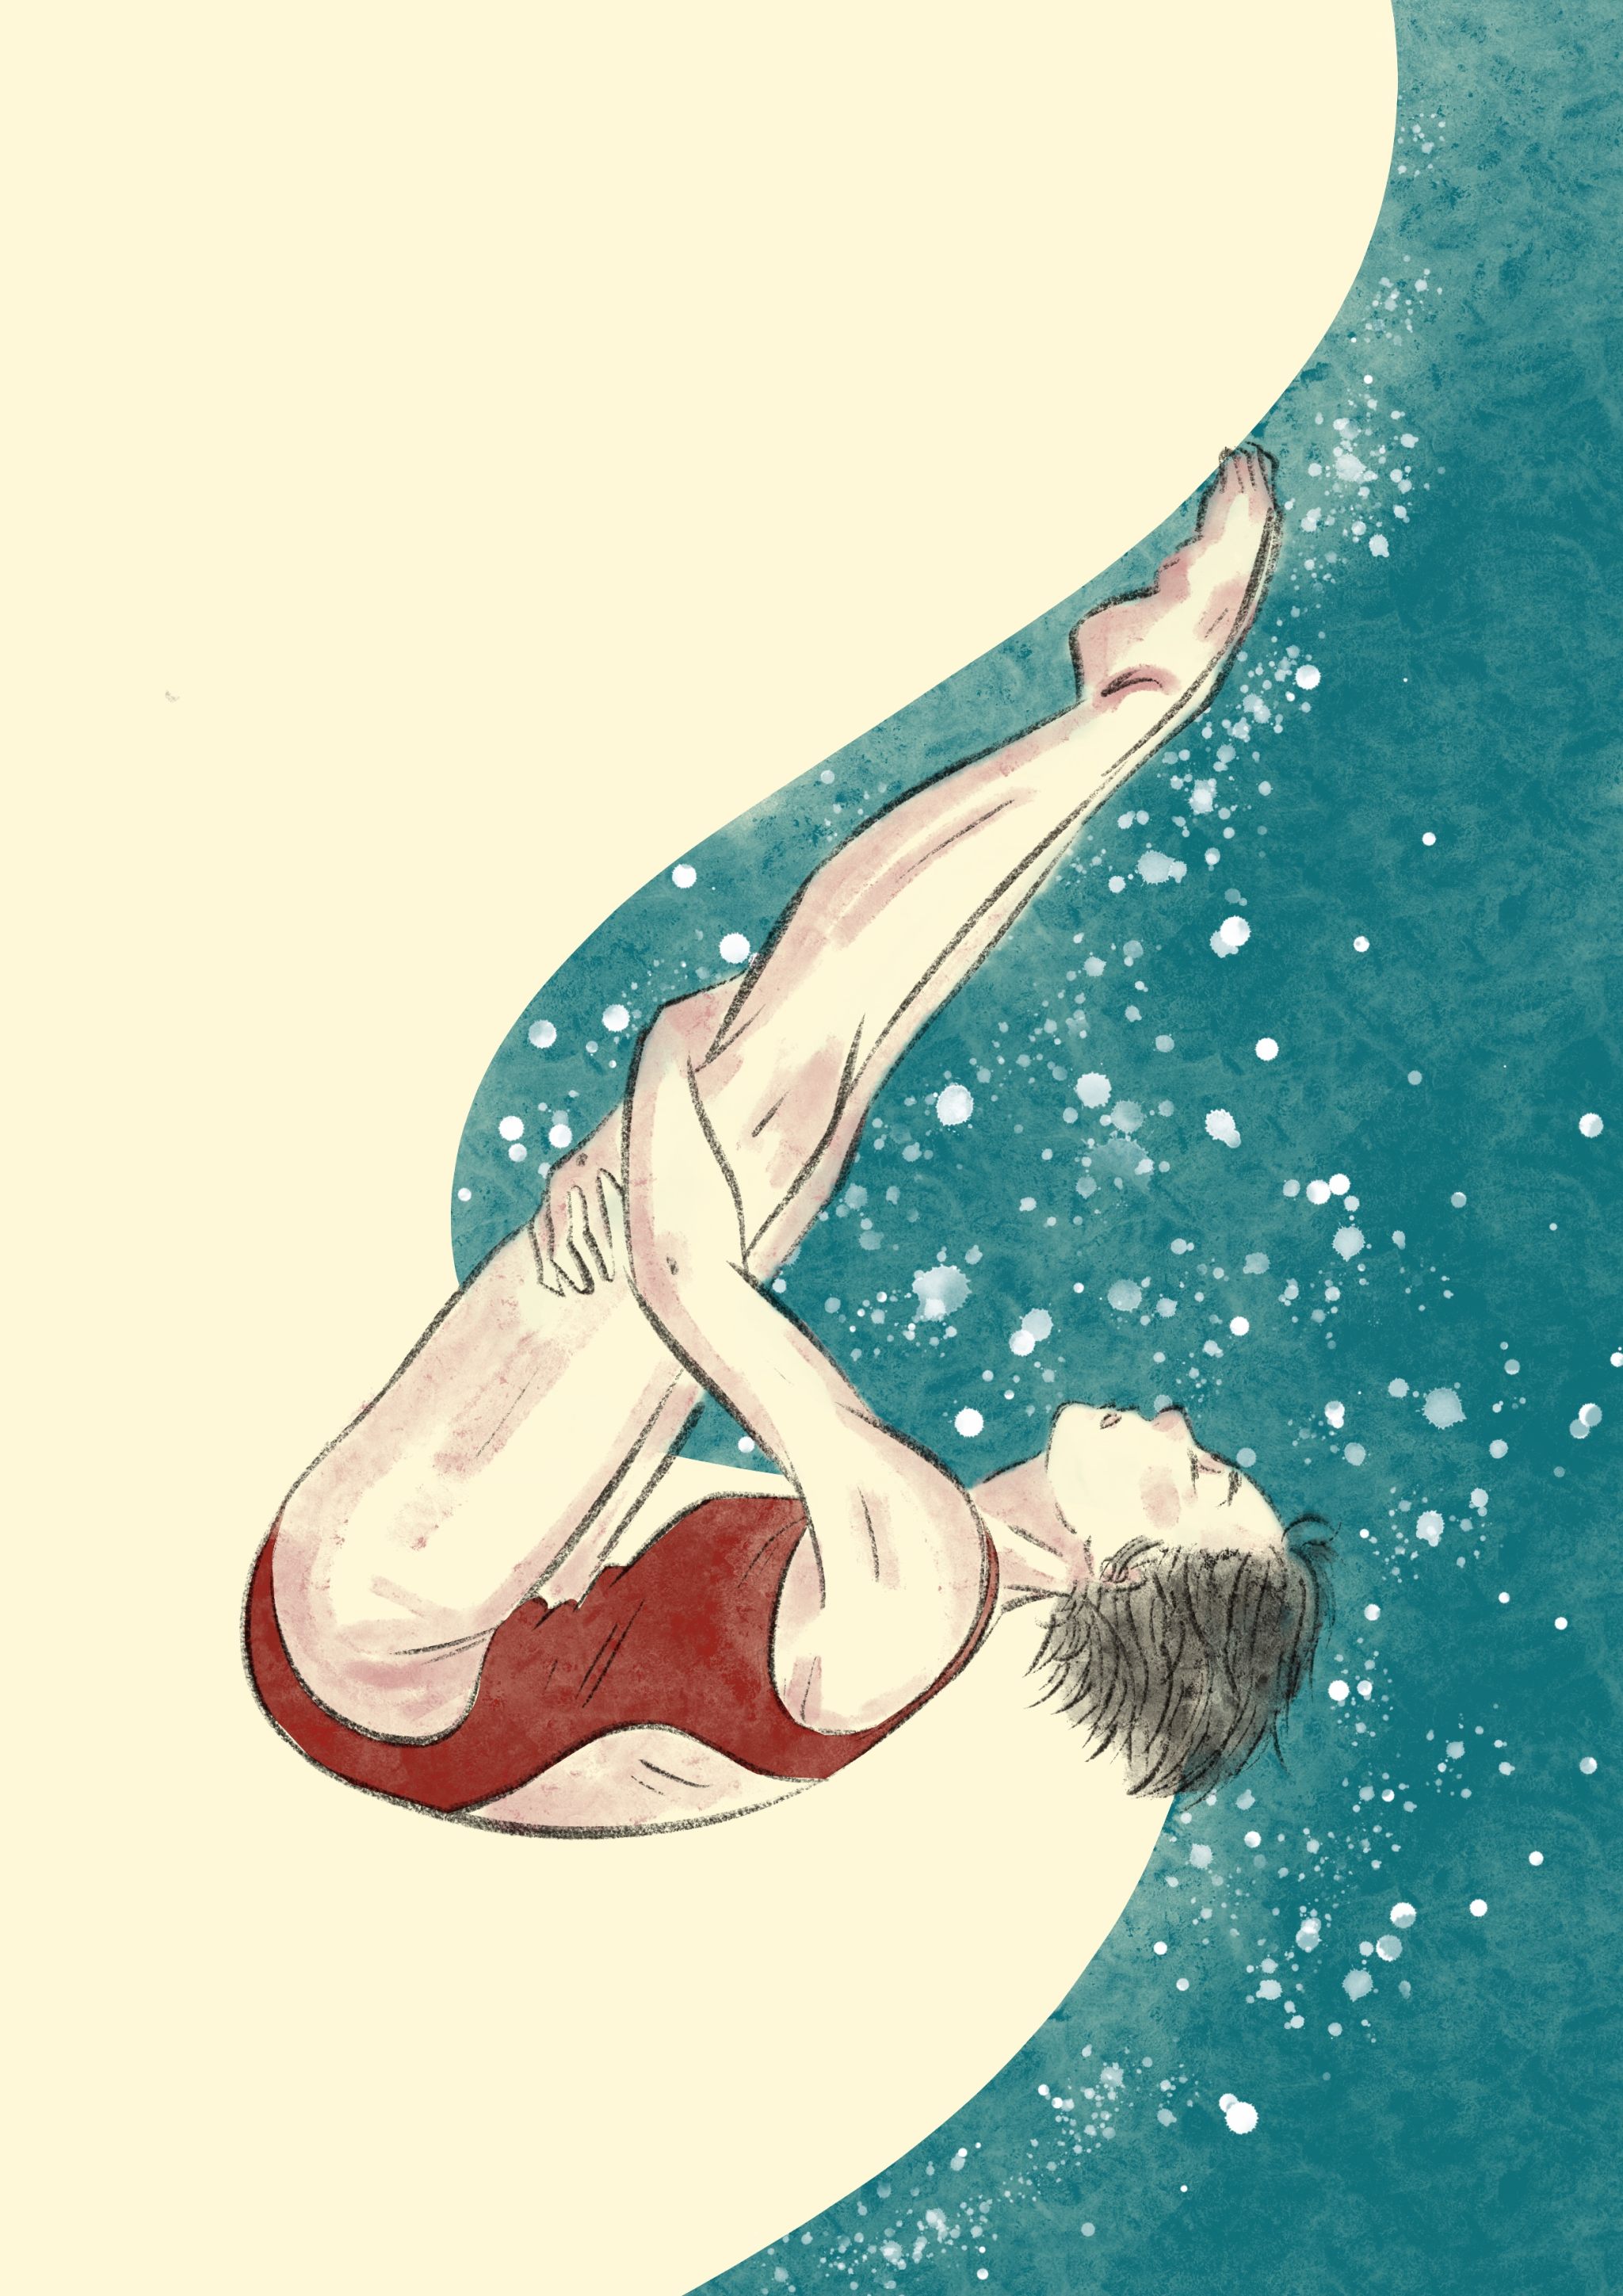 奥运会跳水画画作品图片